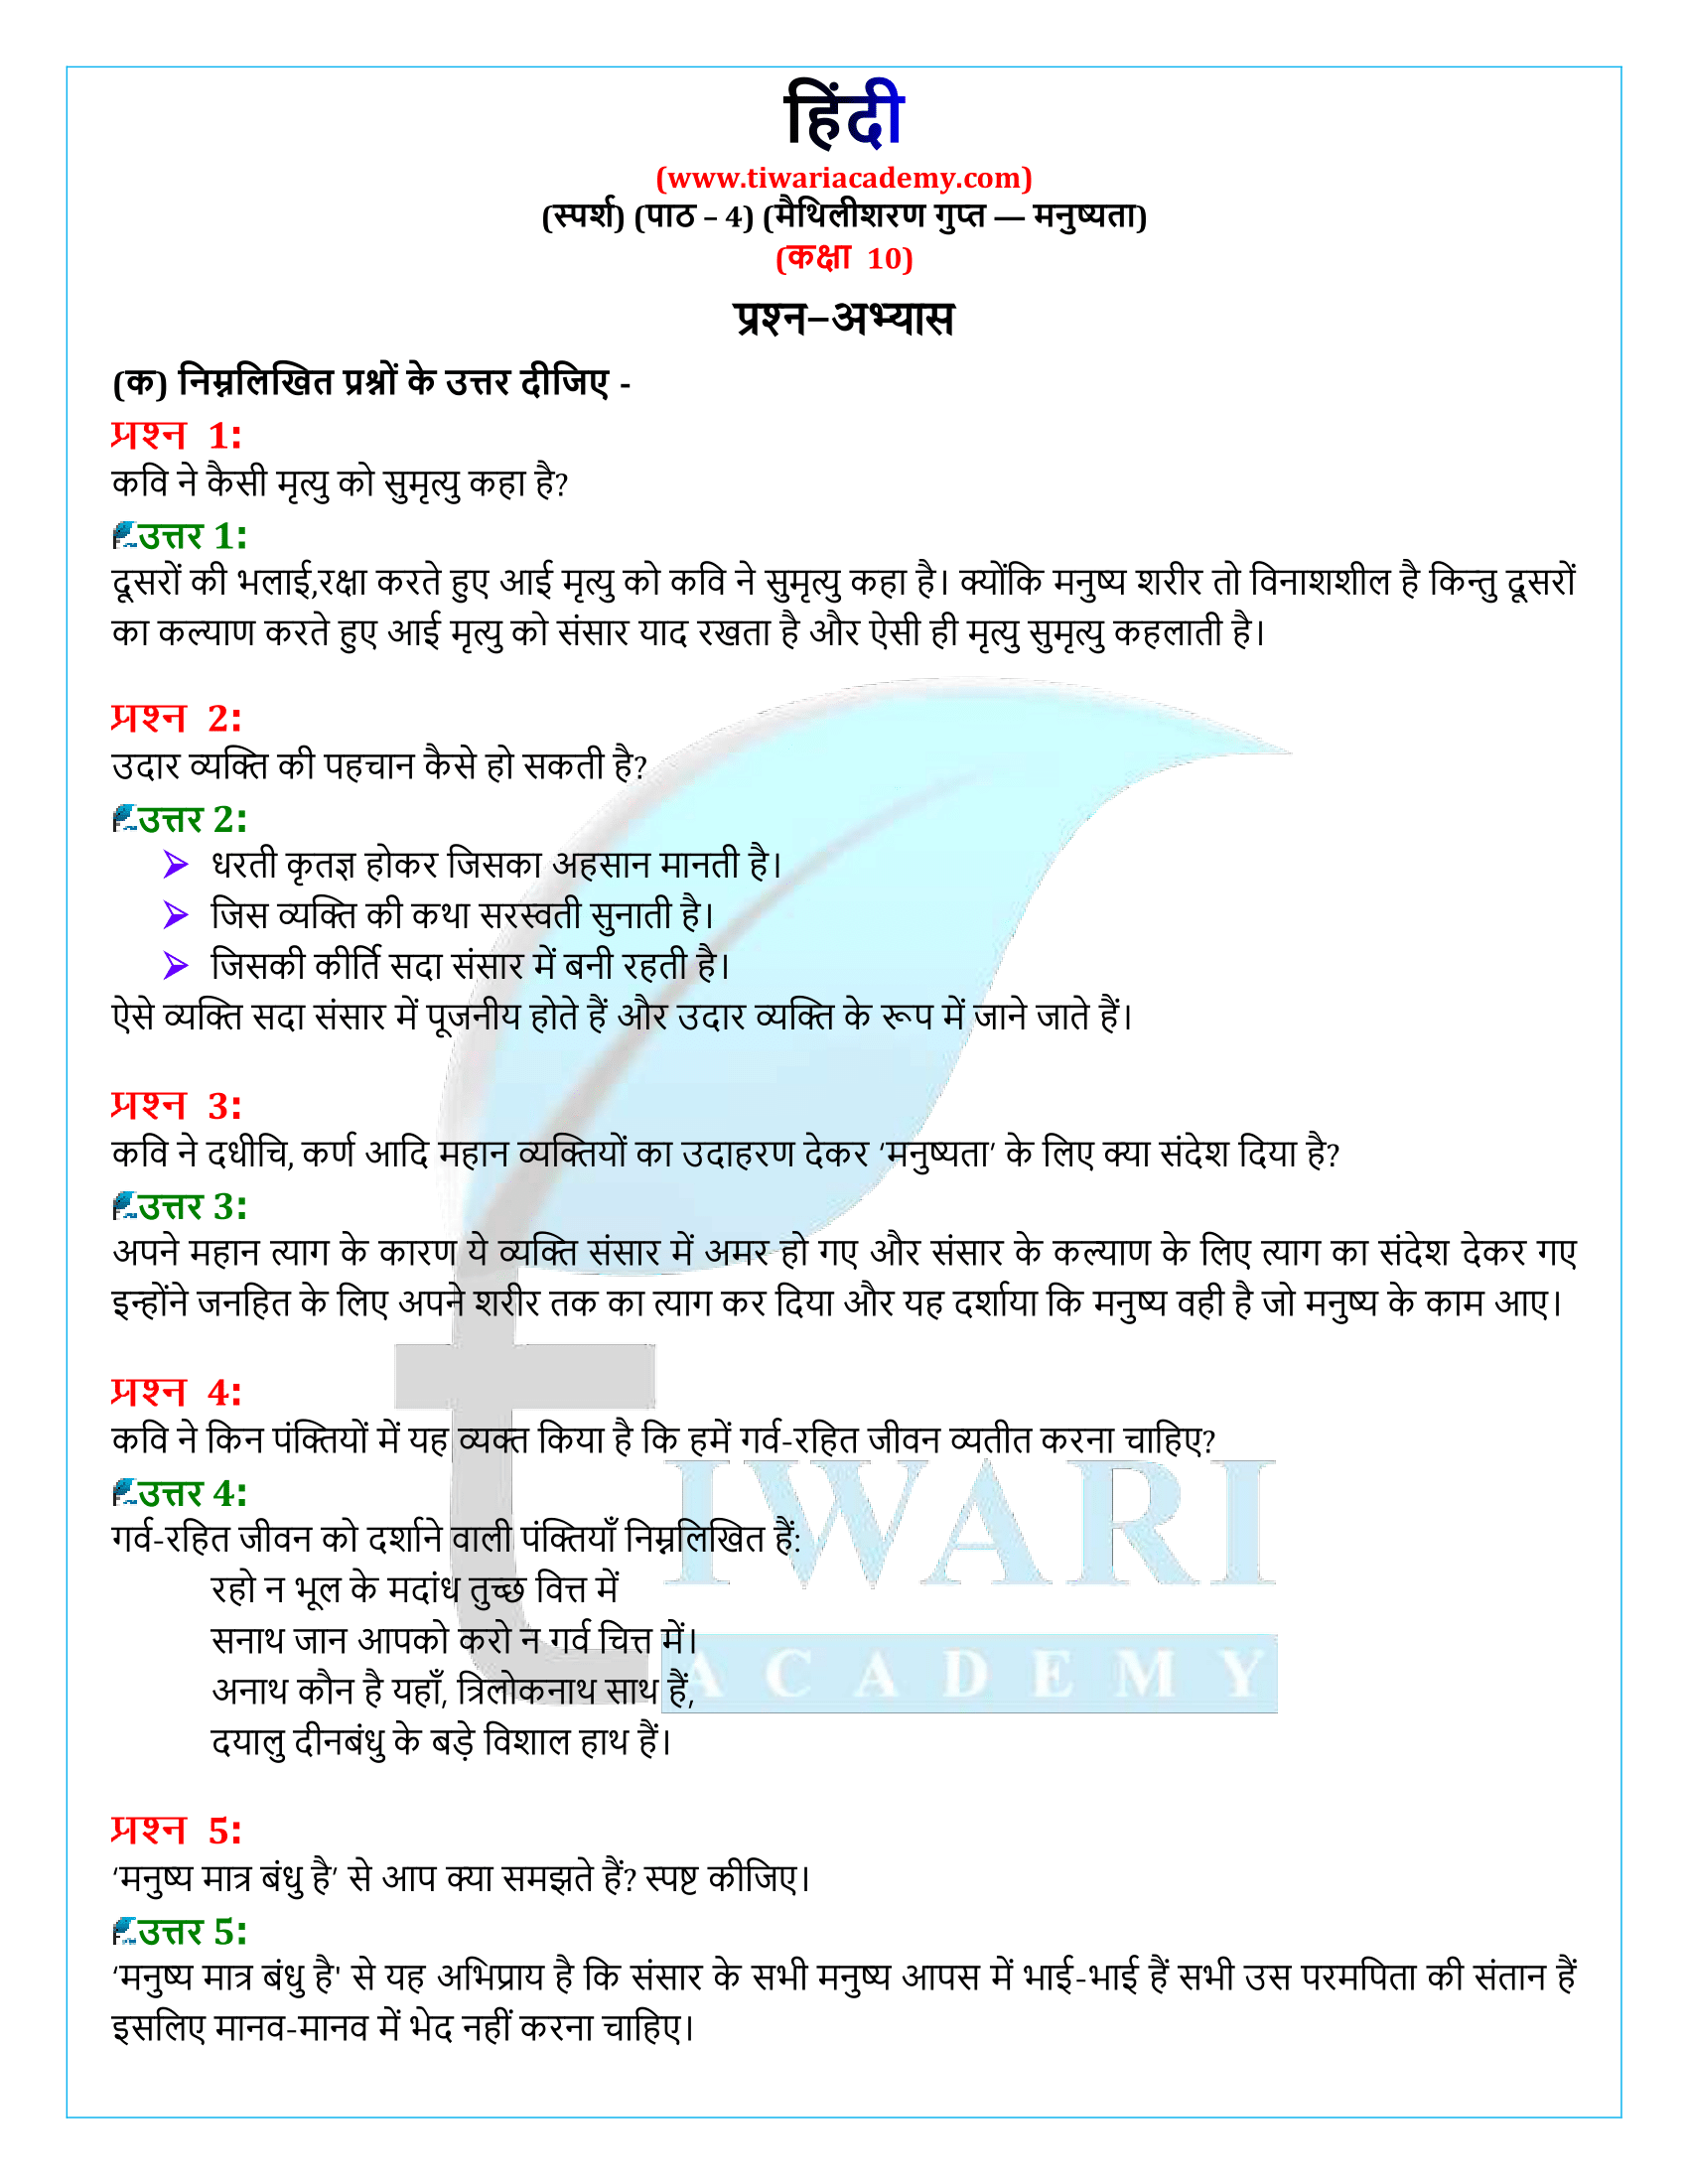 कक्षा 10 हिंदी स्पर्श अध्याय 4 के प्रश्न उत्तर